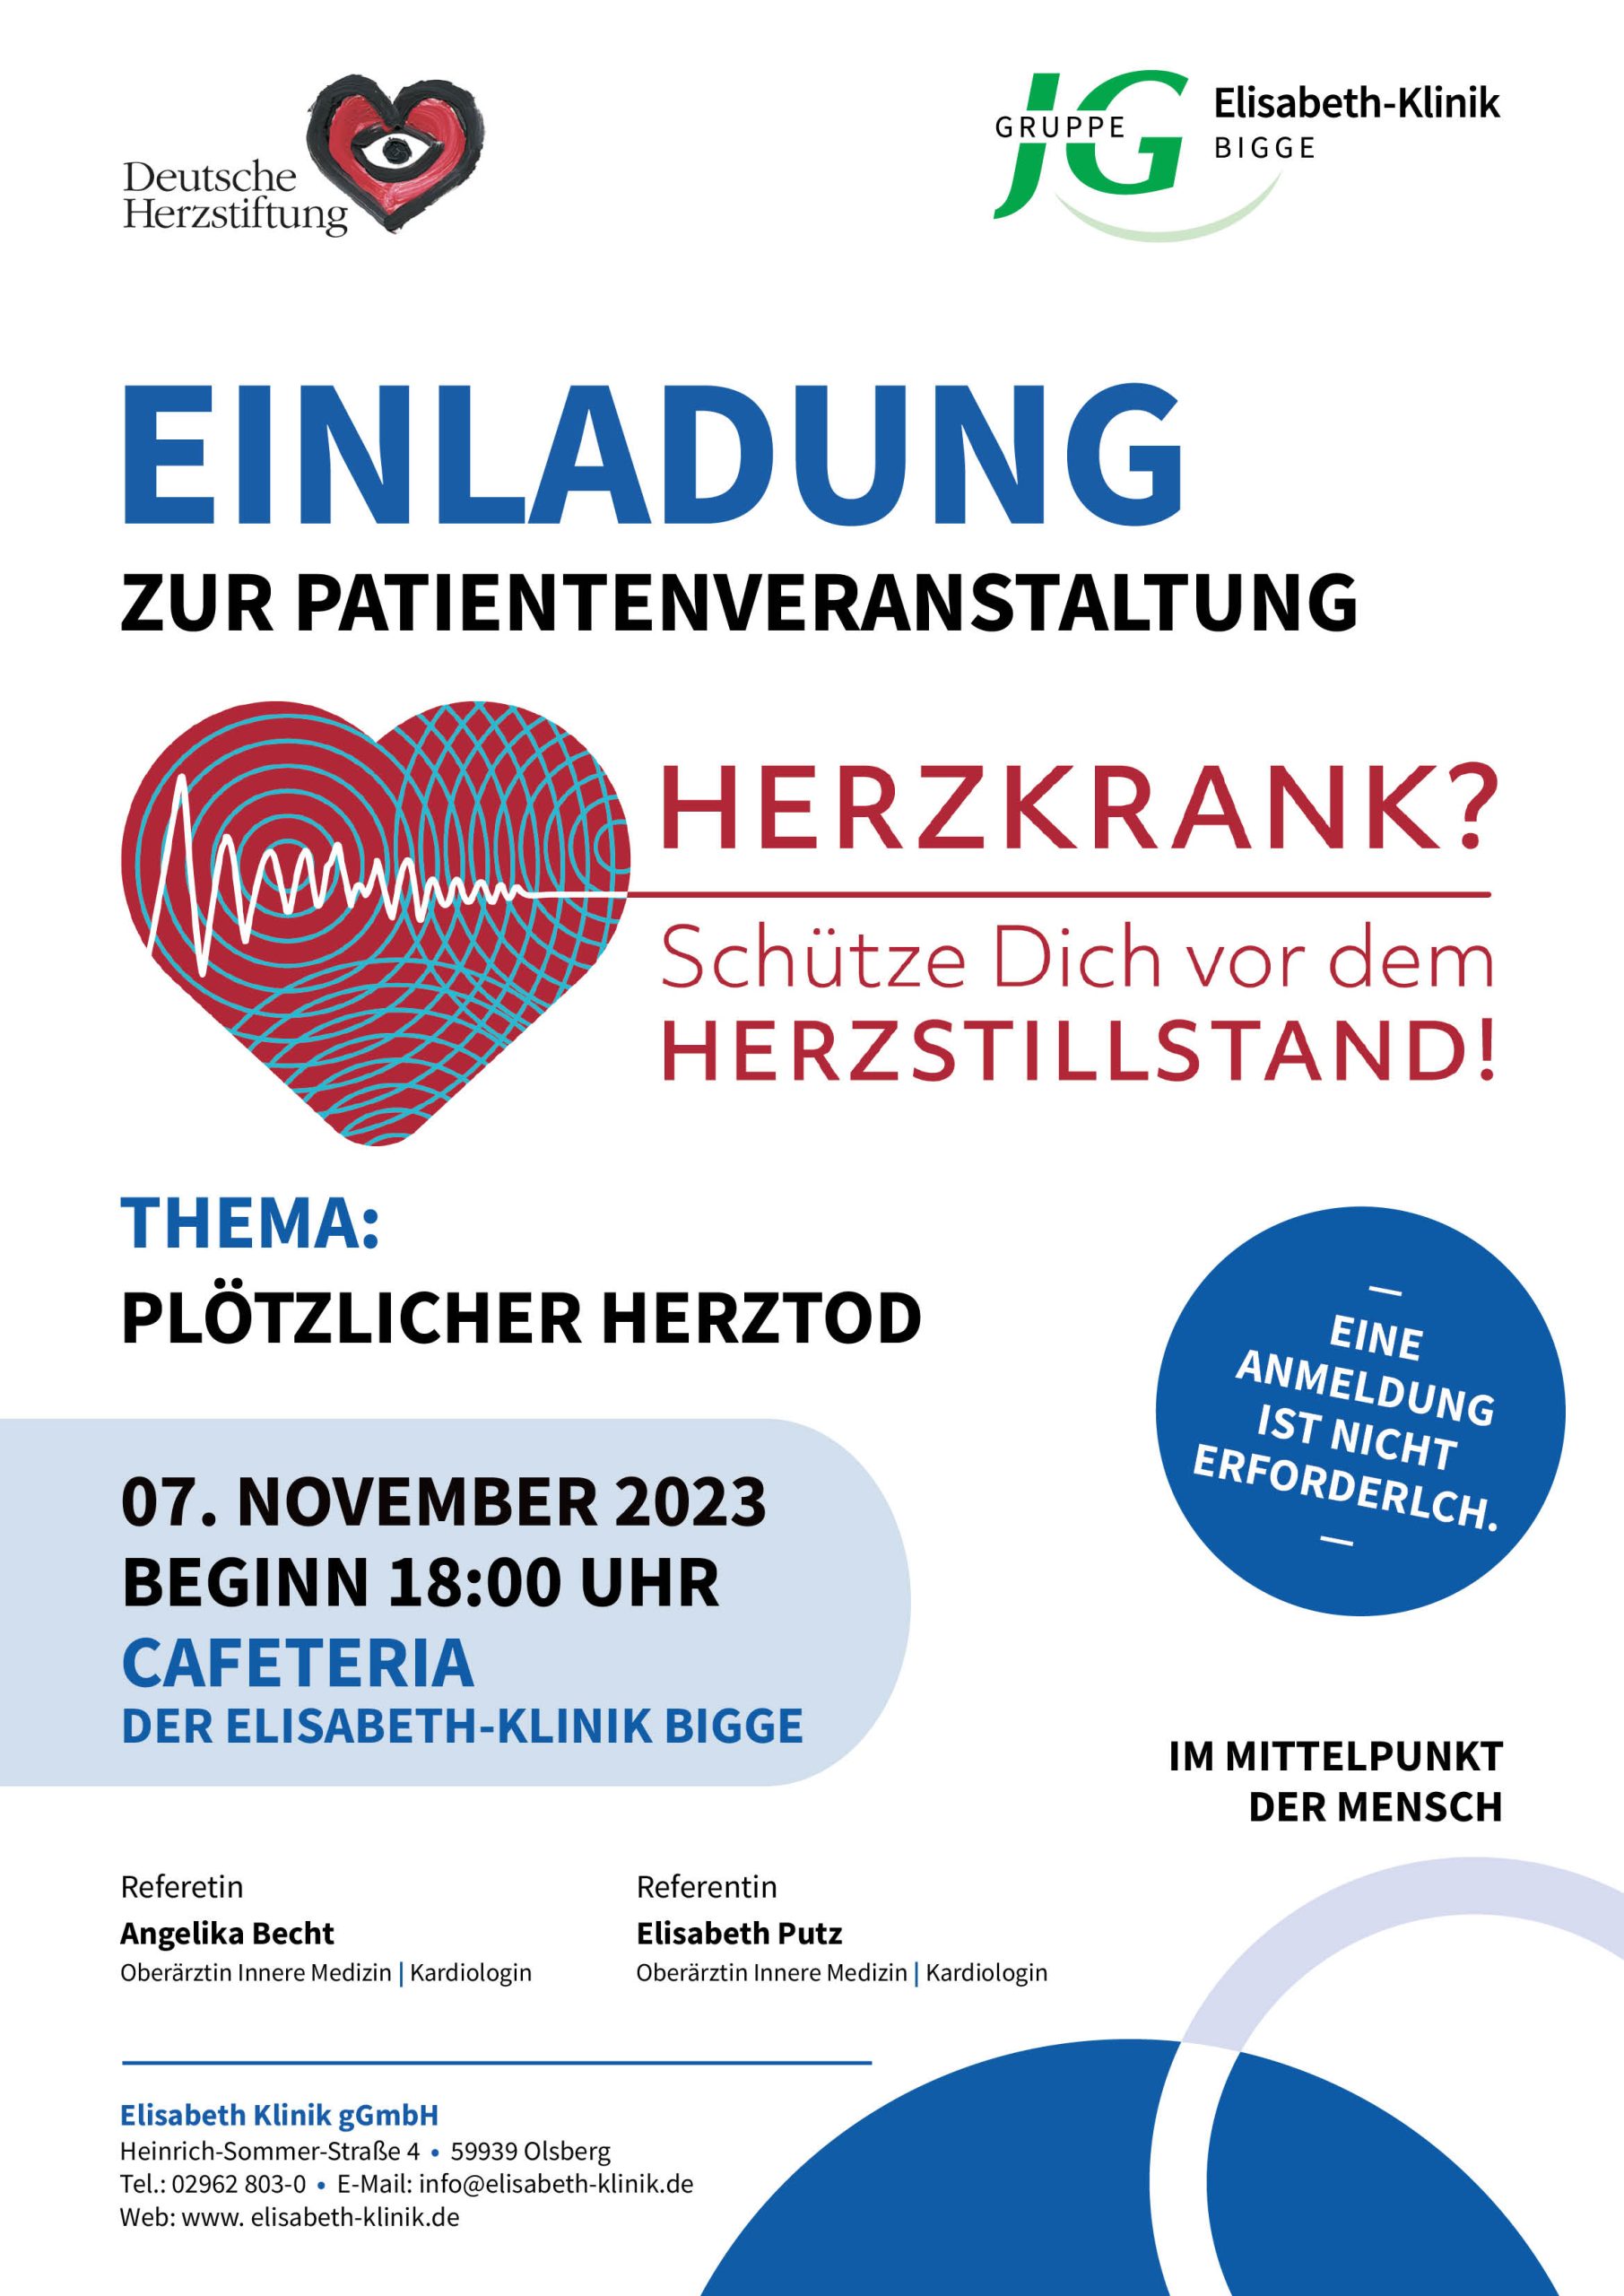 Plötzlicher Herztod - Schütze dich vor dem Herzstillstand! Infoveranstaltung am 7. November 2023. Plakat: Elisabeth-Klinik